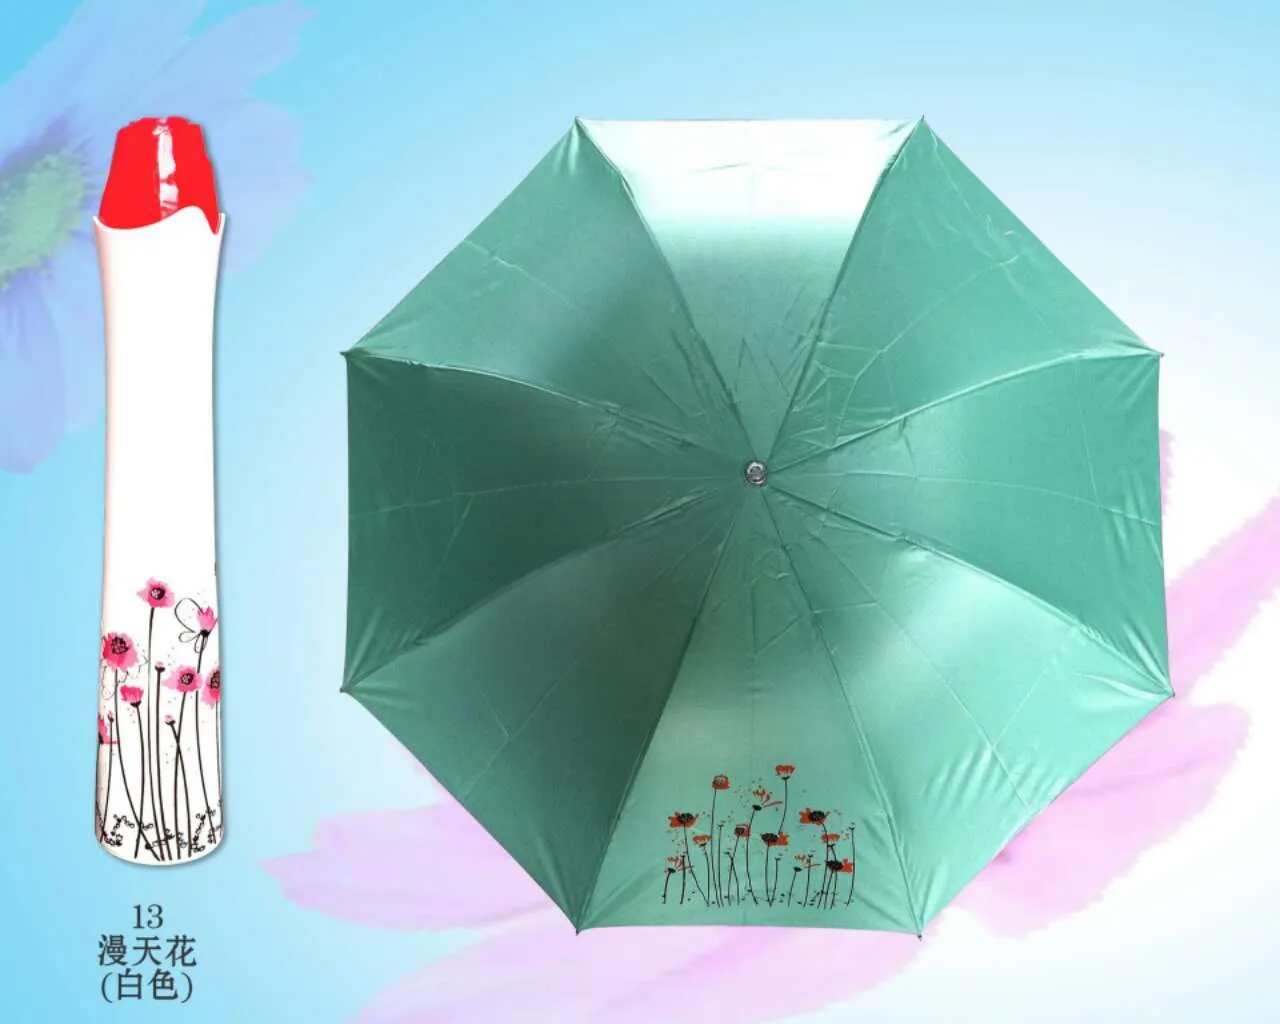 패션 크리 에이 티브 병 우산 / 와인 병 우산 여행 접이식 태양 우산 우산 windproof Sun Shade DHL 무료